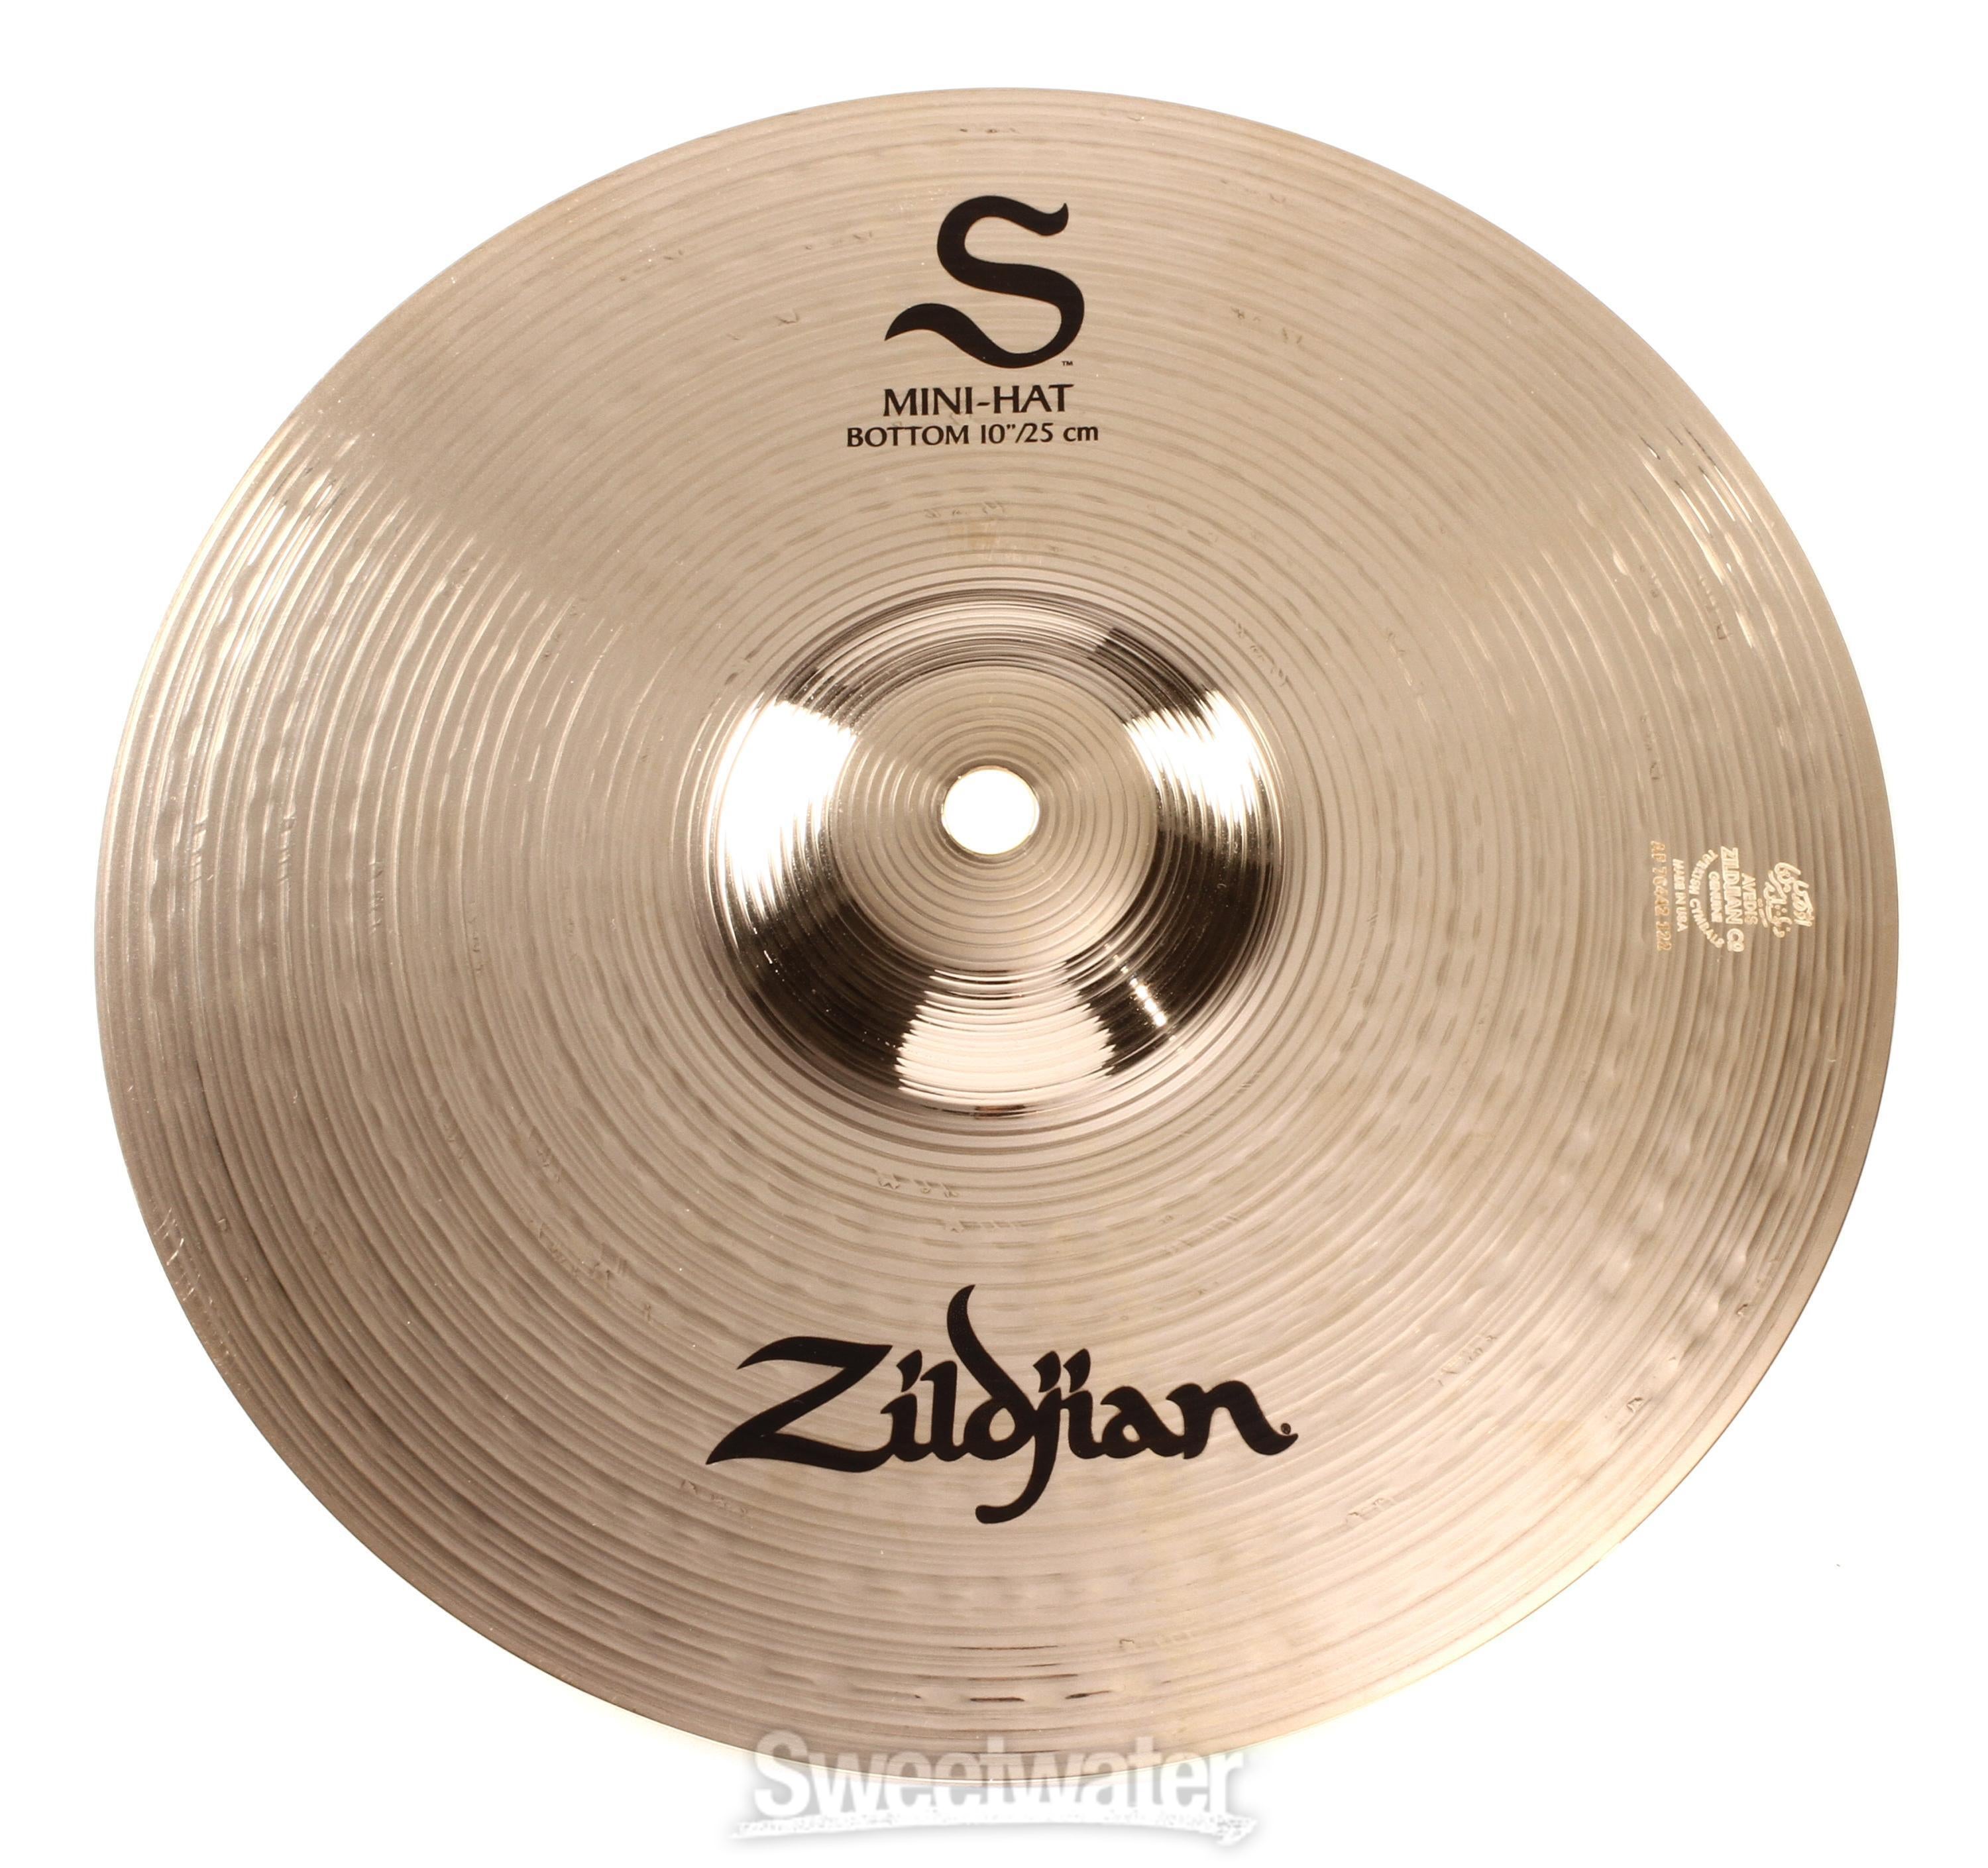 Zildjian S Series Mini Hi-hat Cymbals - 10